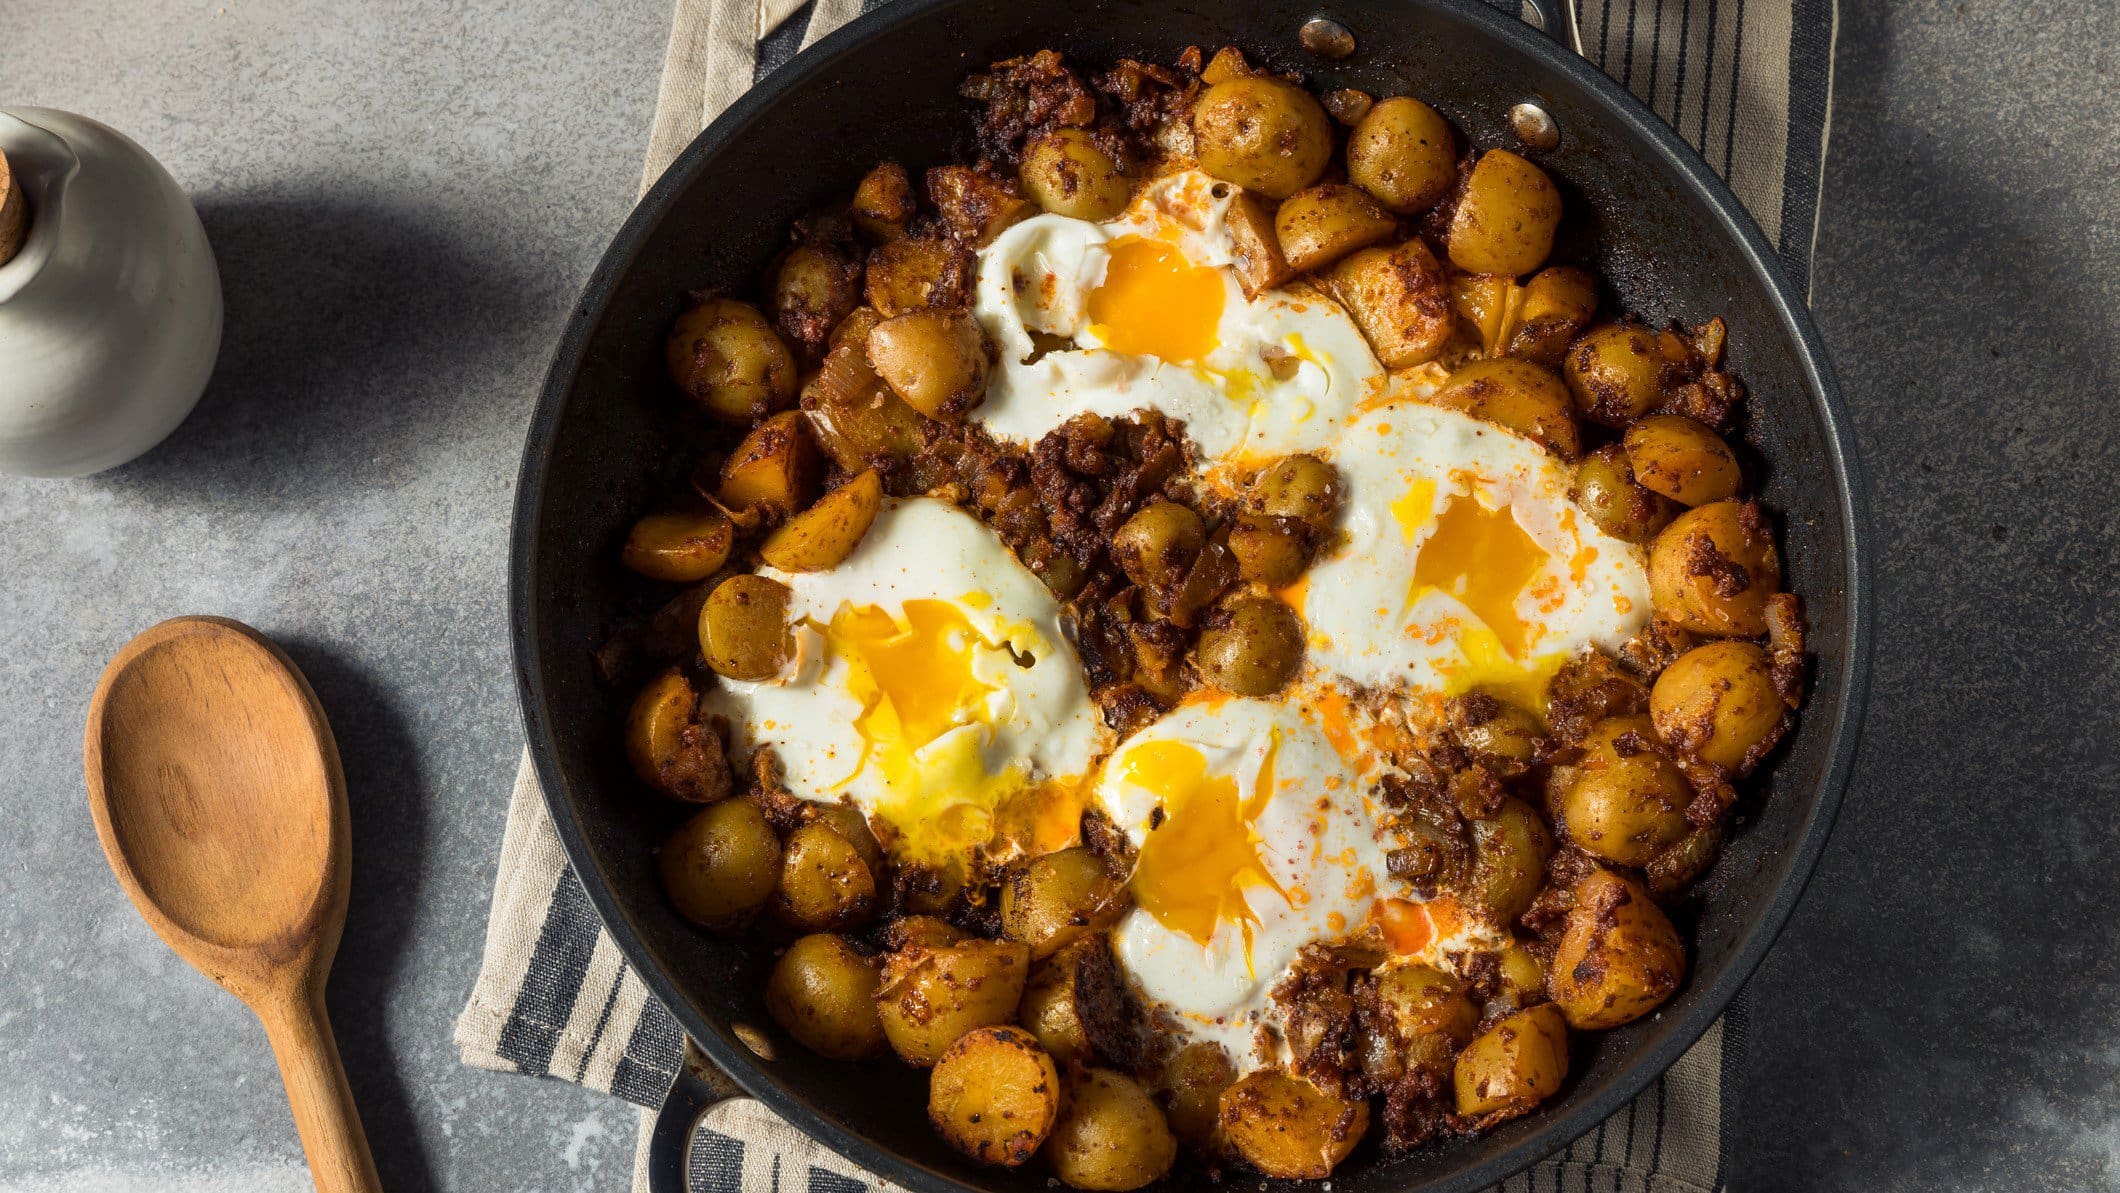 Huevos Rotos, spanische zerbrochene Eier, mit Kartoffeln und Chorizo in einer Pfanne. Diese steht auf grauem Untergrund.